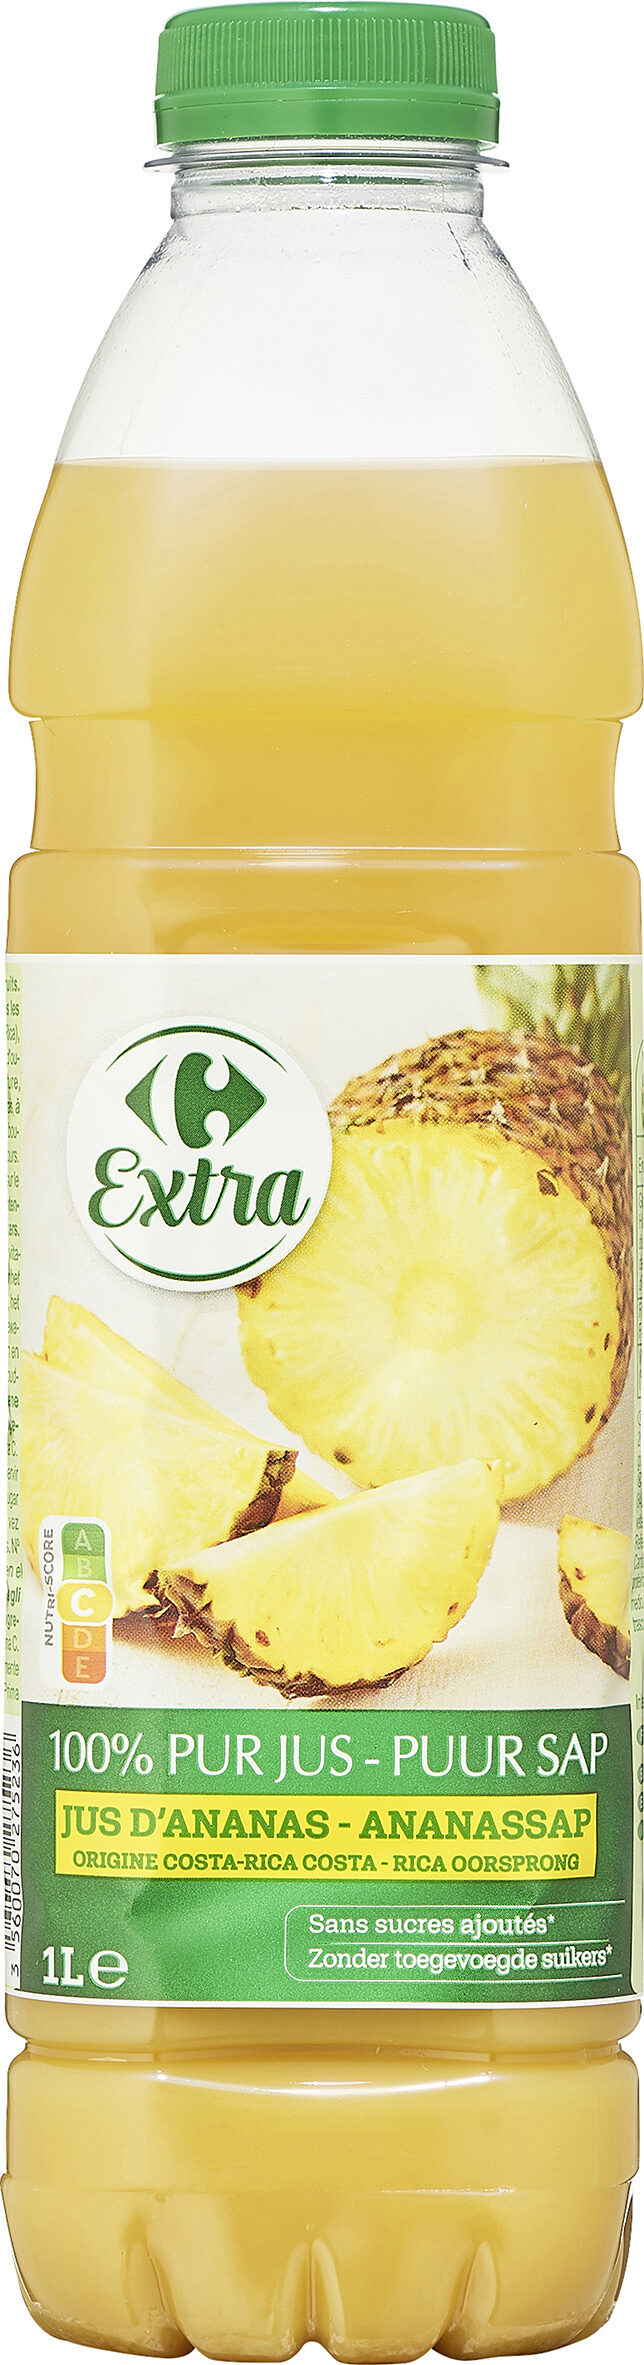 100% PUR JUS Ananas Origine COSTA RICA - Producte - fr